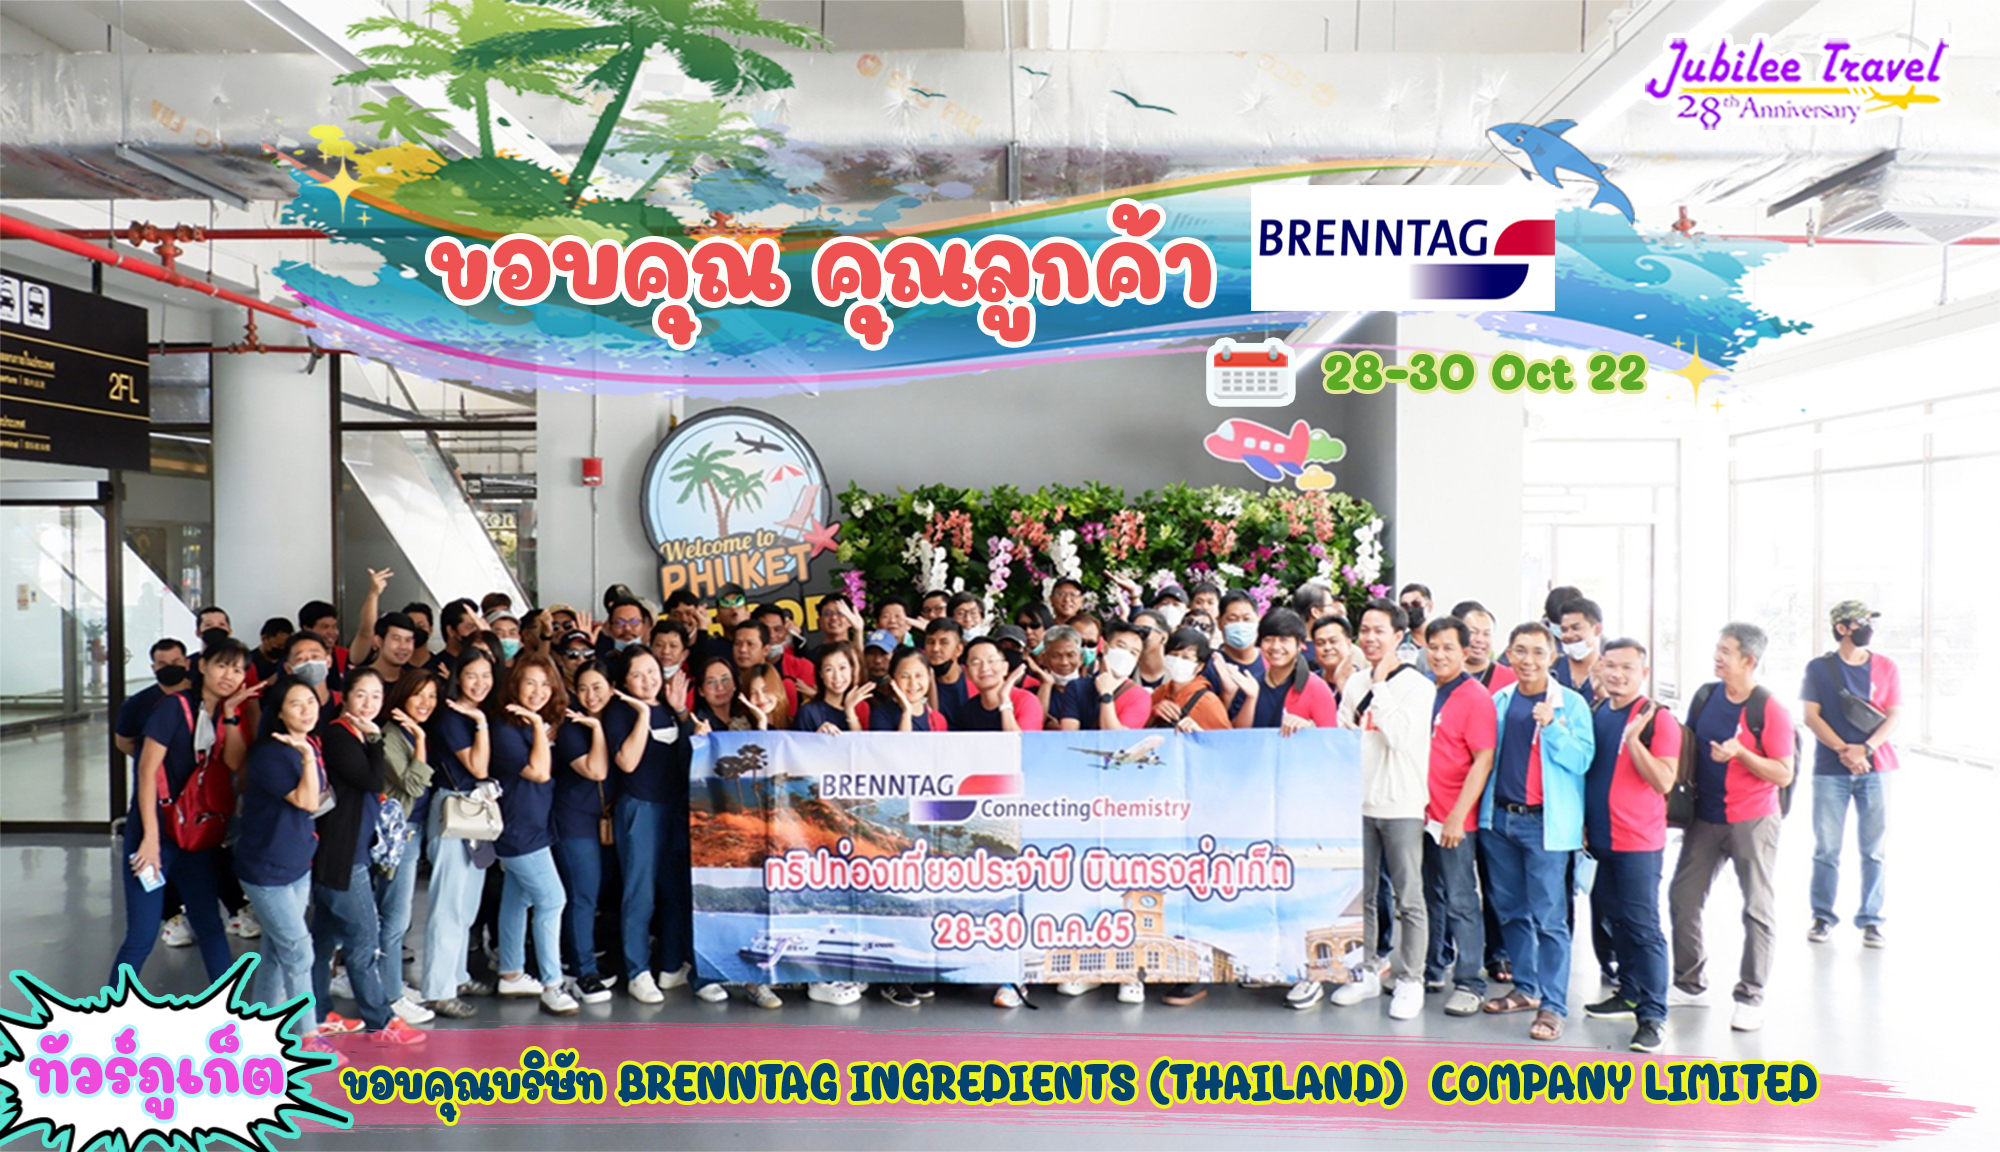 ขอบคุณคุณลูกค้า บริษัท BRENNTAG 28-30 Oct ’22